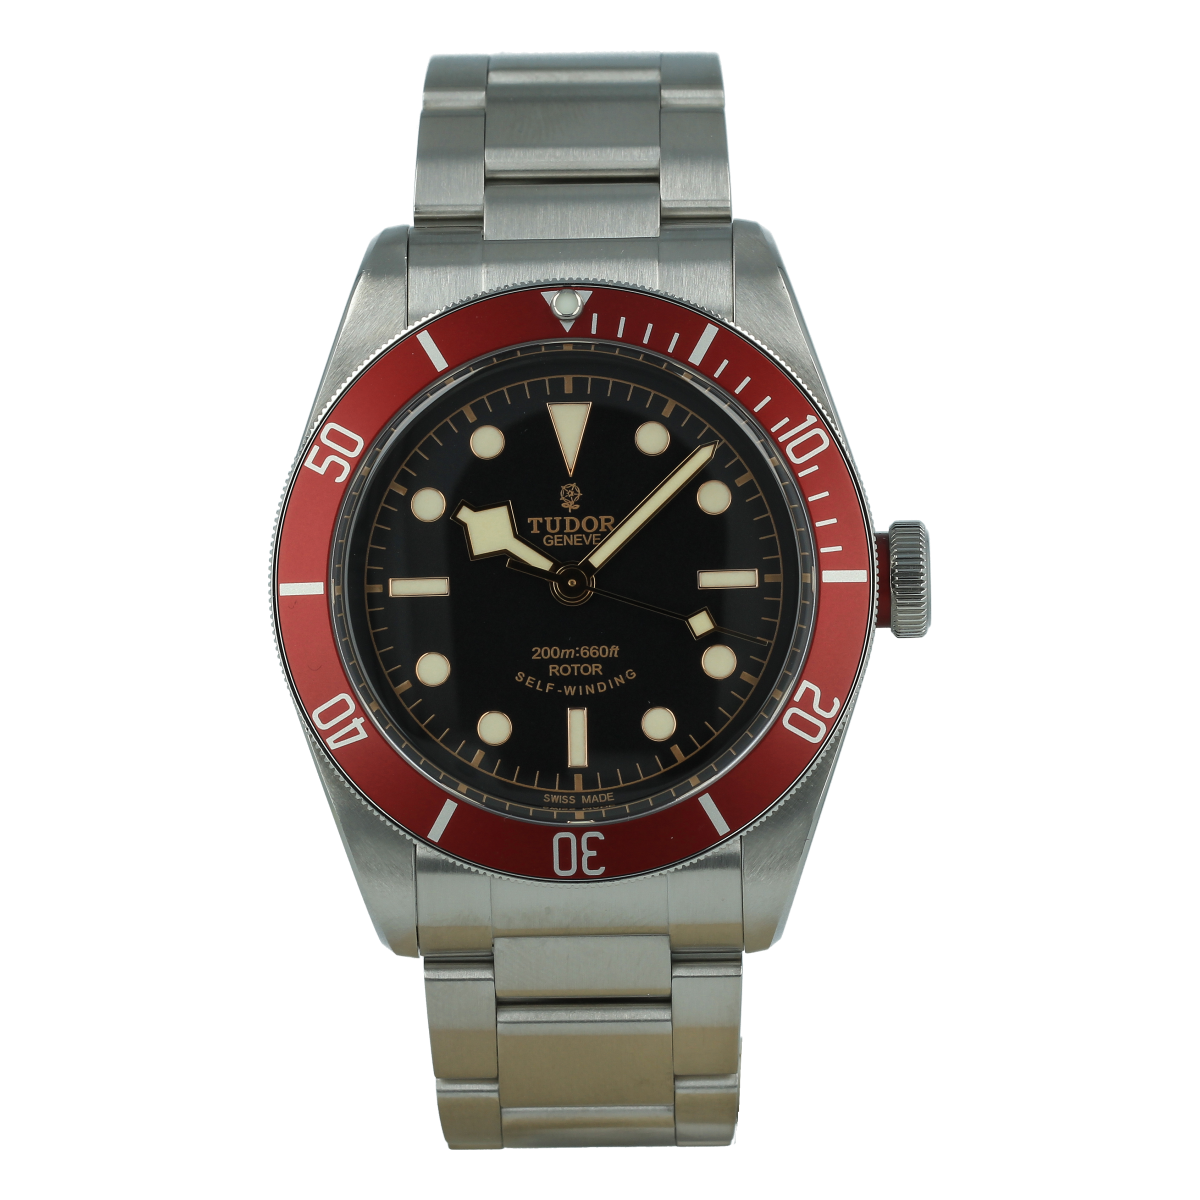 Tudor Black Bay 79220N | Buy pre owned Tudor Watch